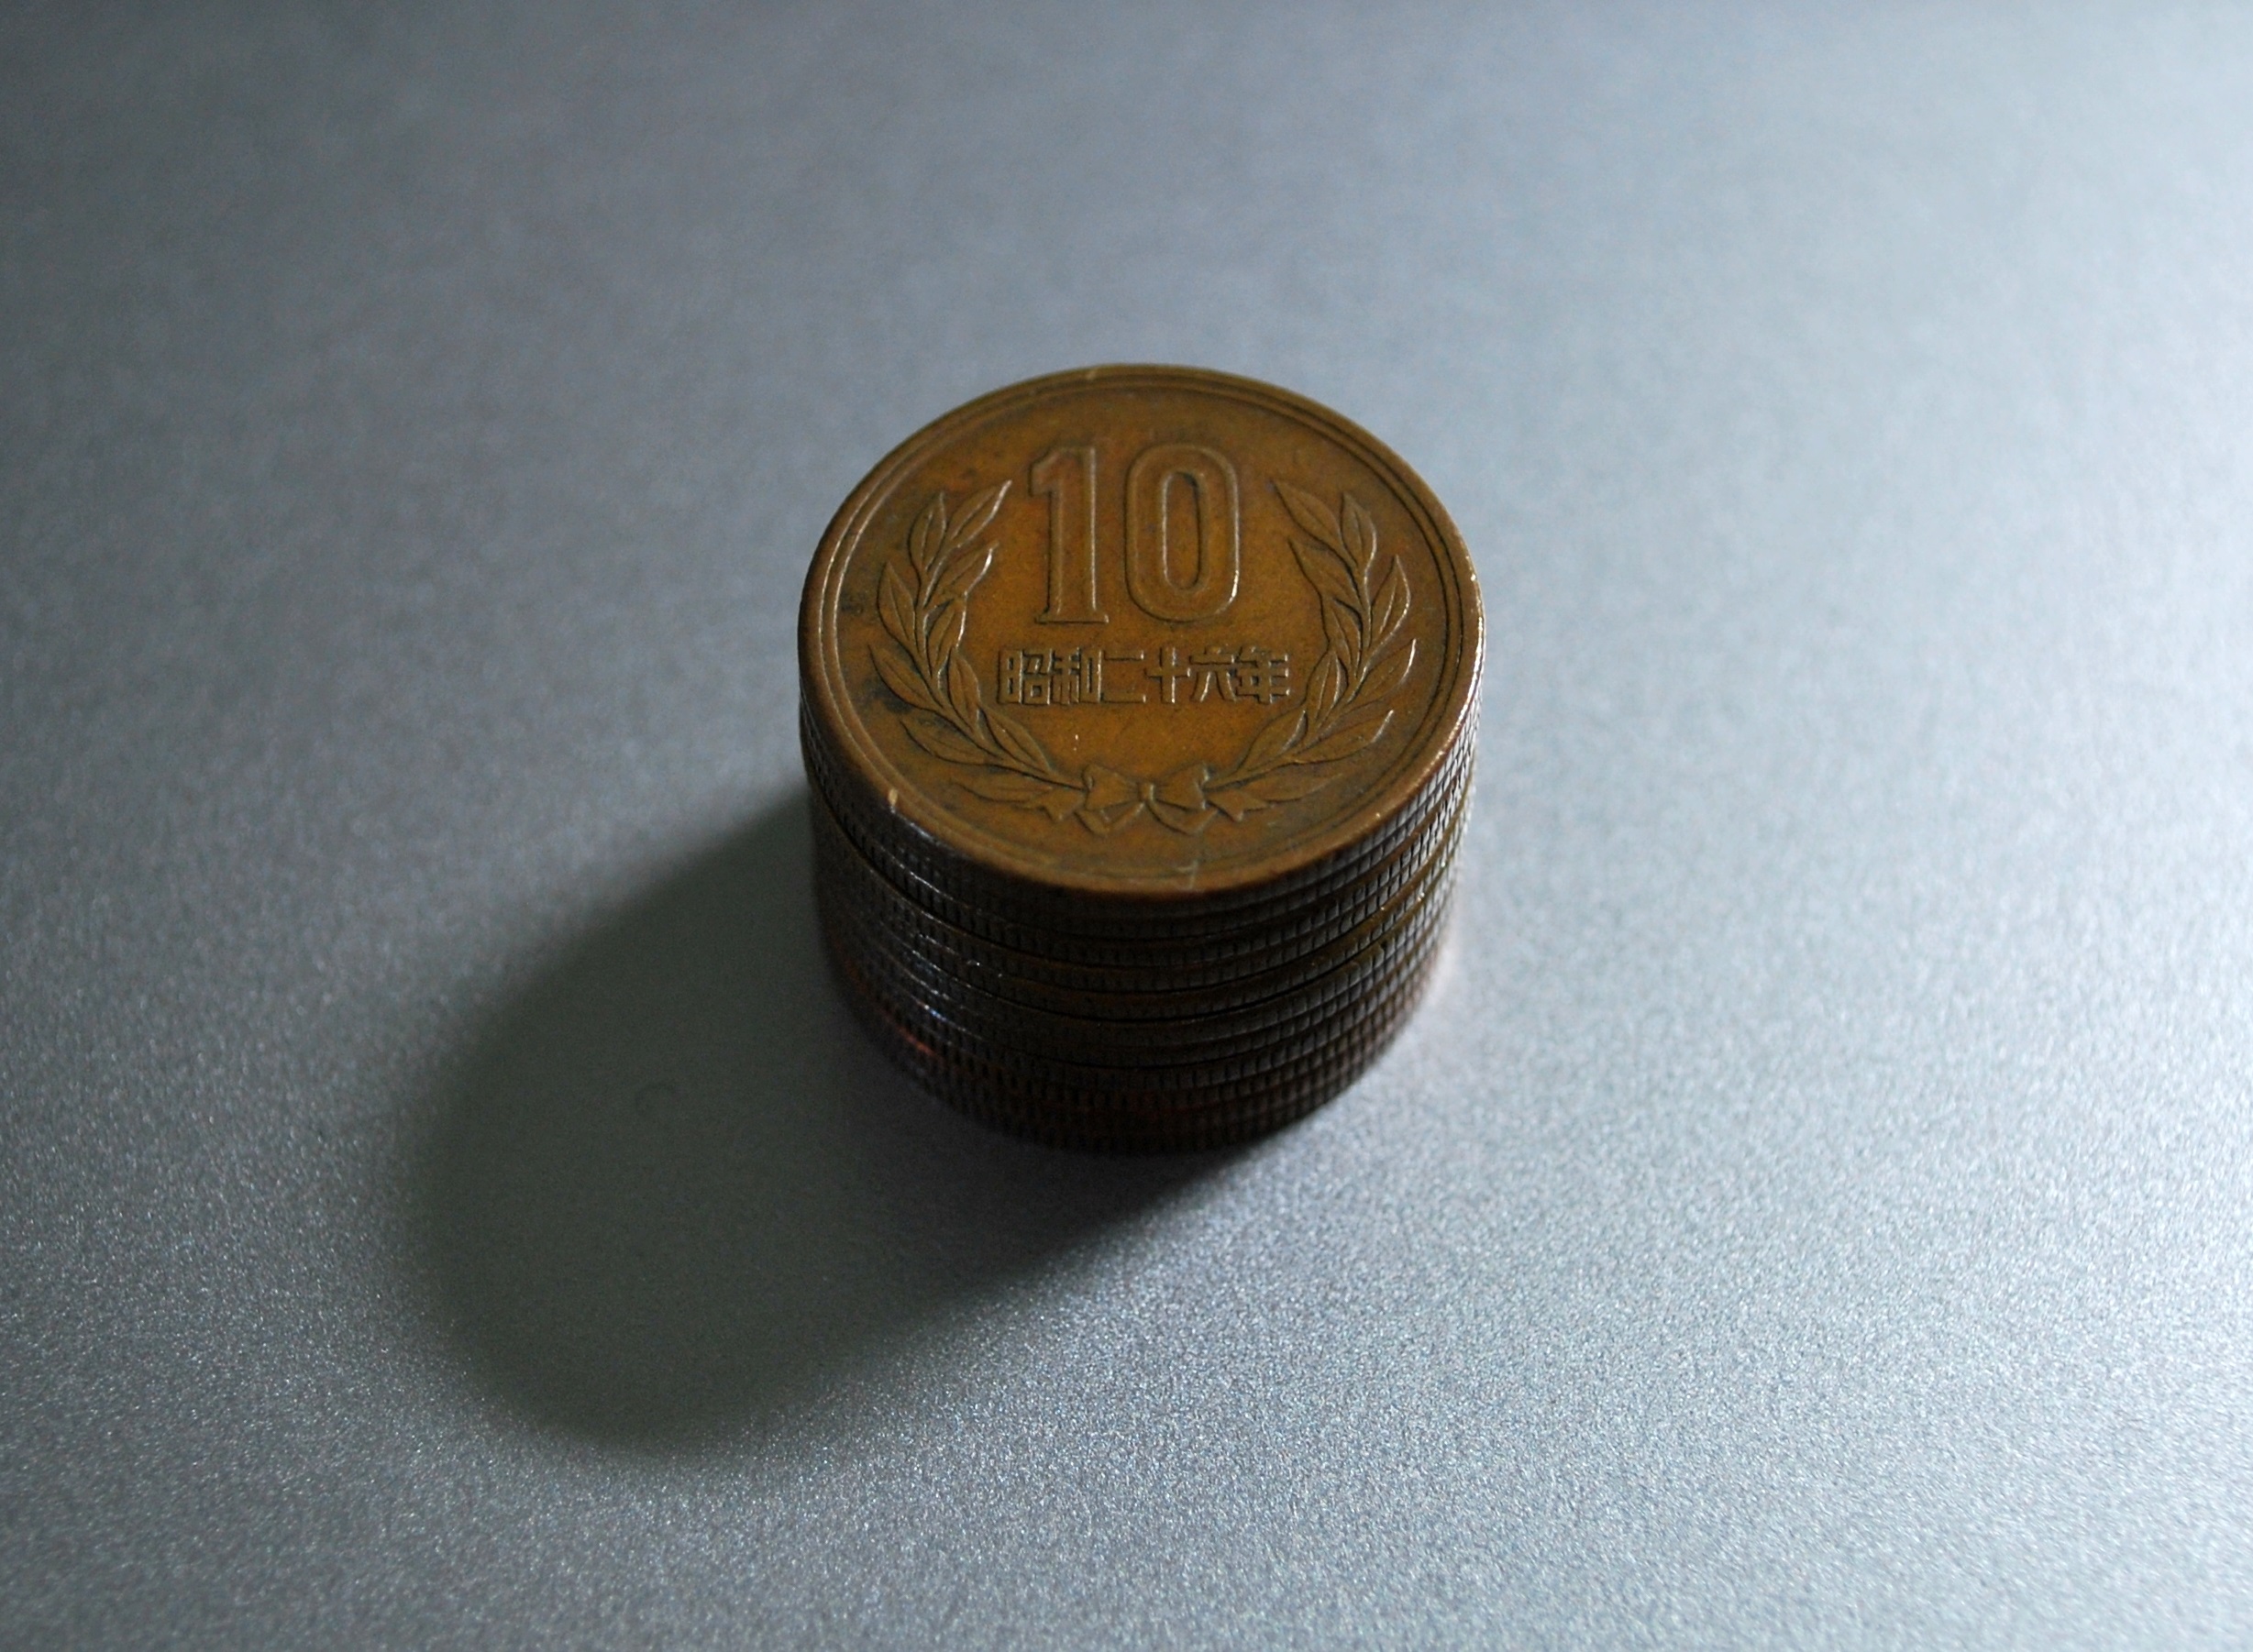 【ギザ10円玉】はなぜ出来たのか。その価値や入手方法などはあるのか